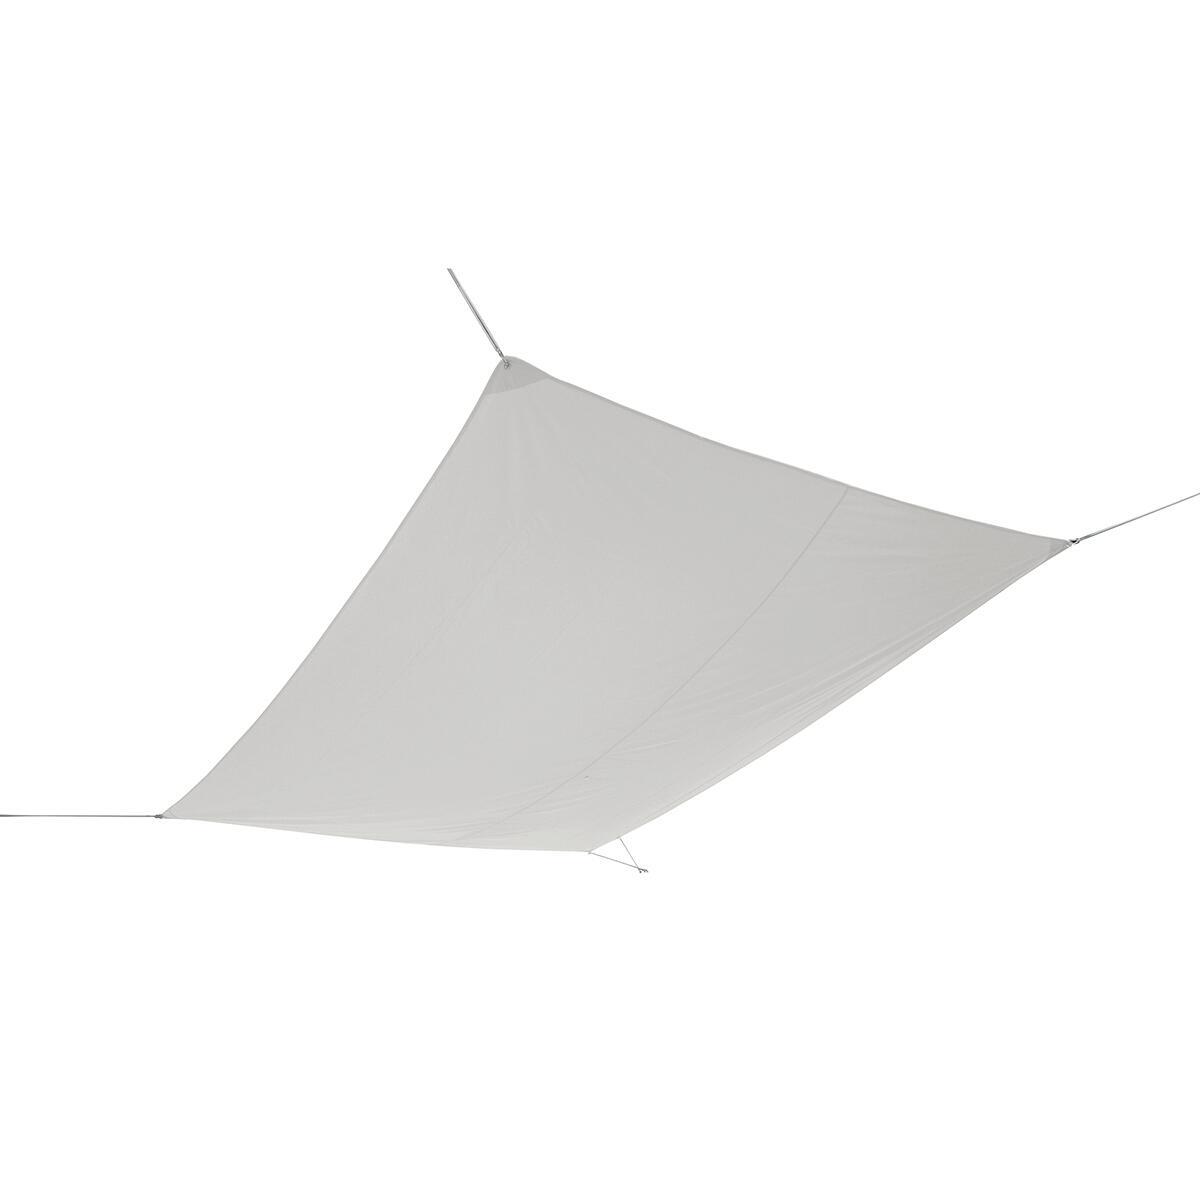 JYYnet Vela Ombreggiante Vela Parasole Rettangolare Tenda a Vela Impermeabile Protezione Raggi UV Vela Tenda per Giardino Terrazza Campeggio 2×3m, Beige 